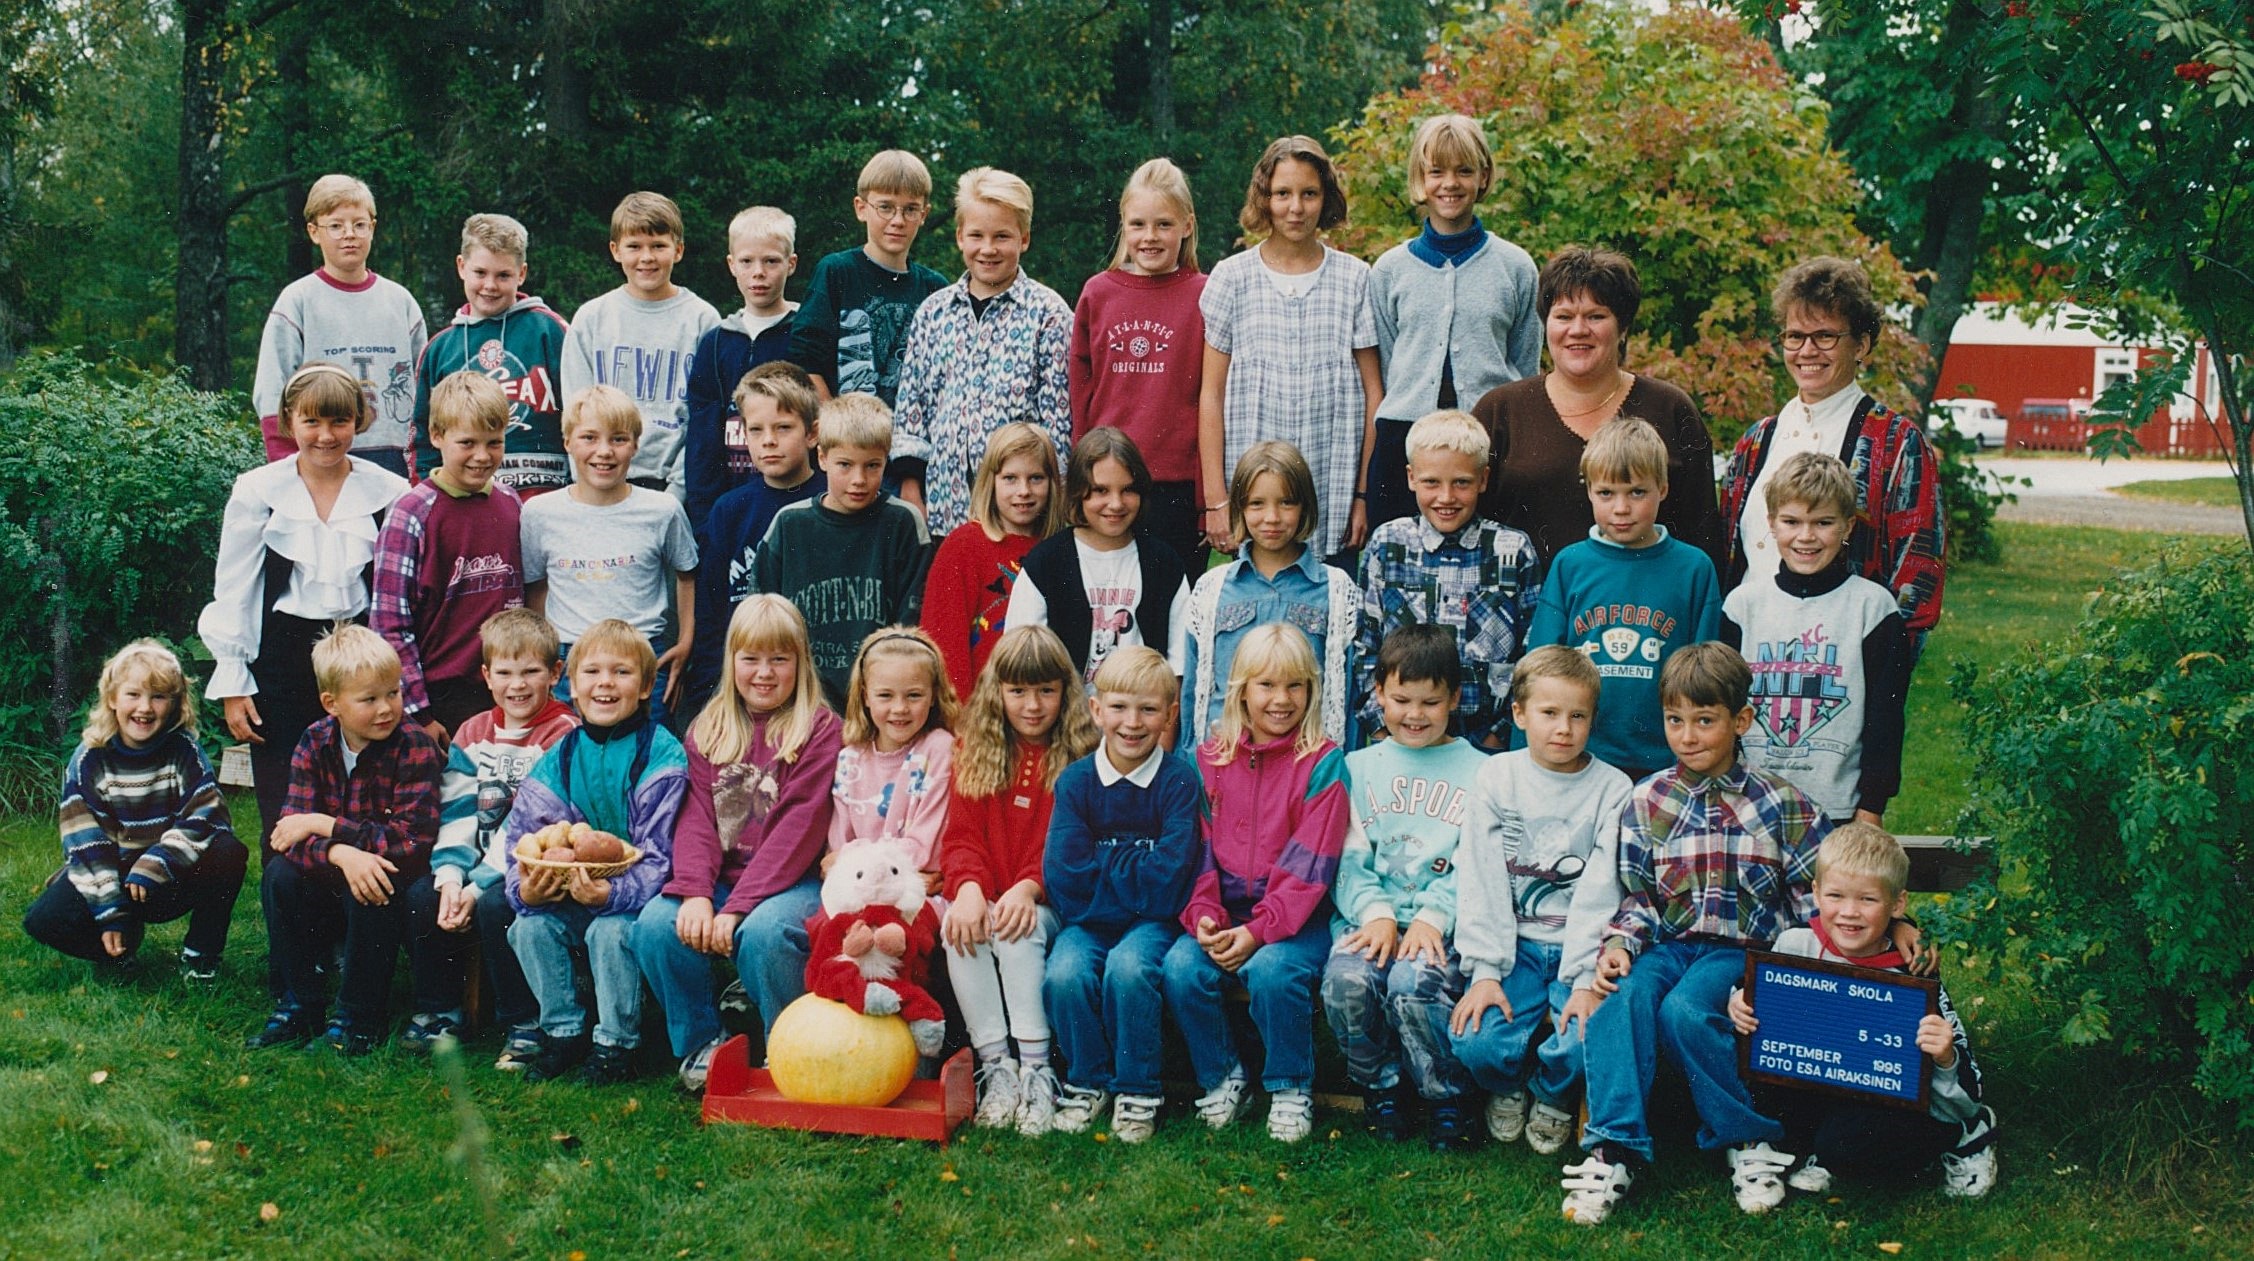 År 1995, Dagsmark skola.